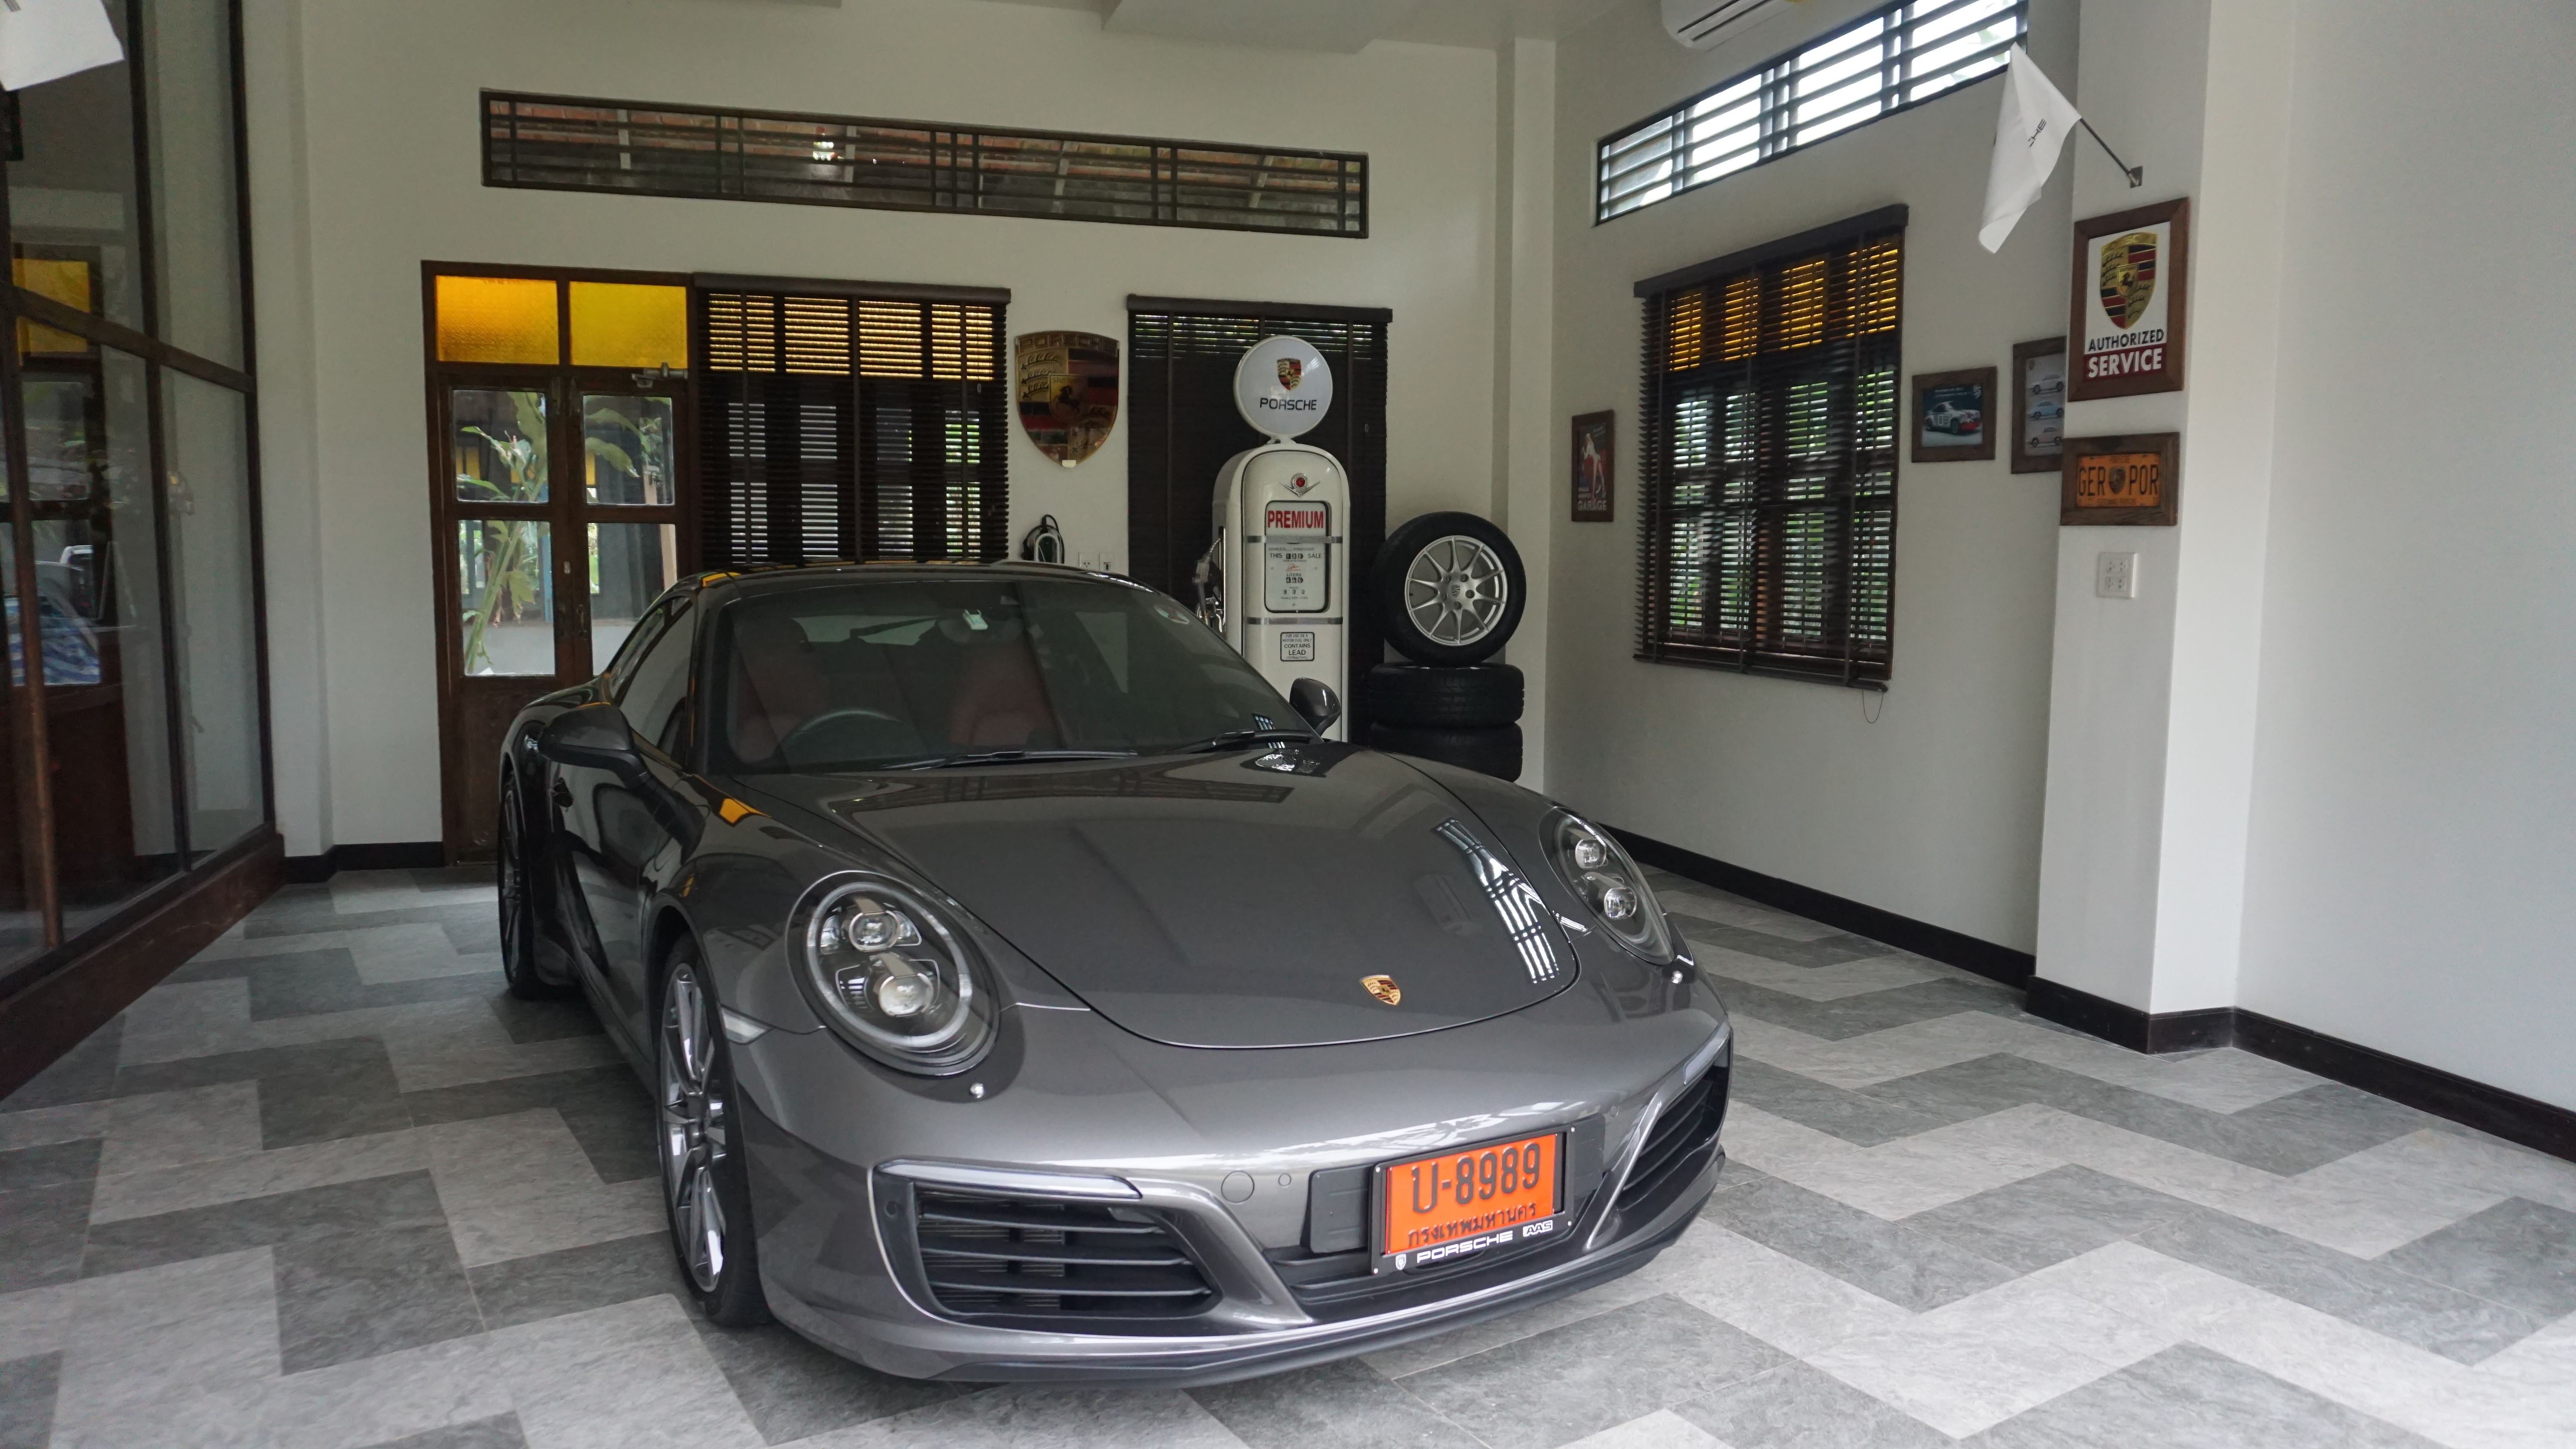 Porsche garage | My car | Pinterest | Cars